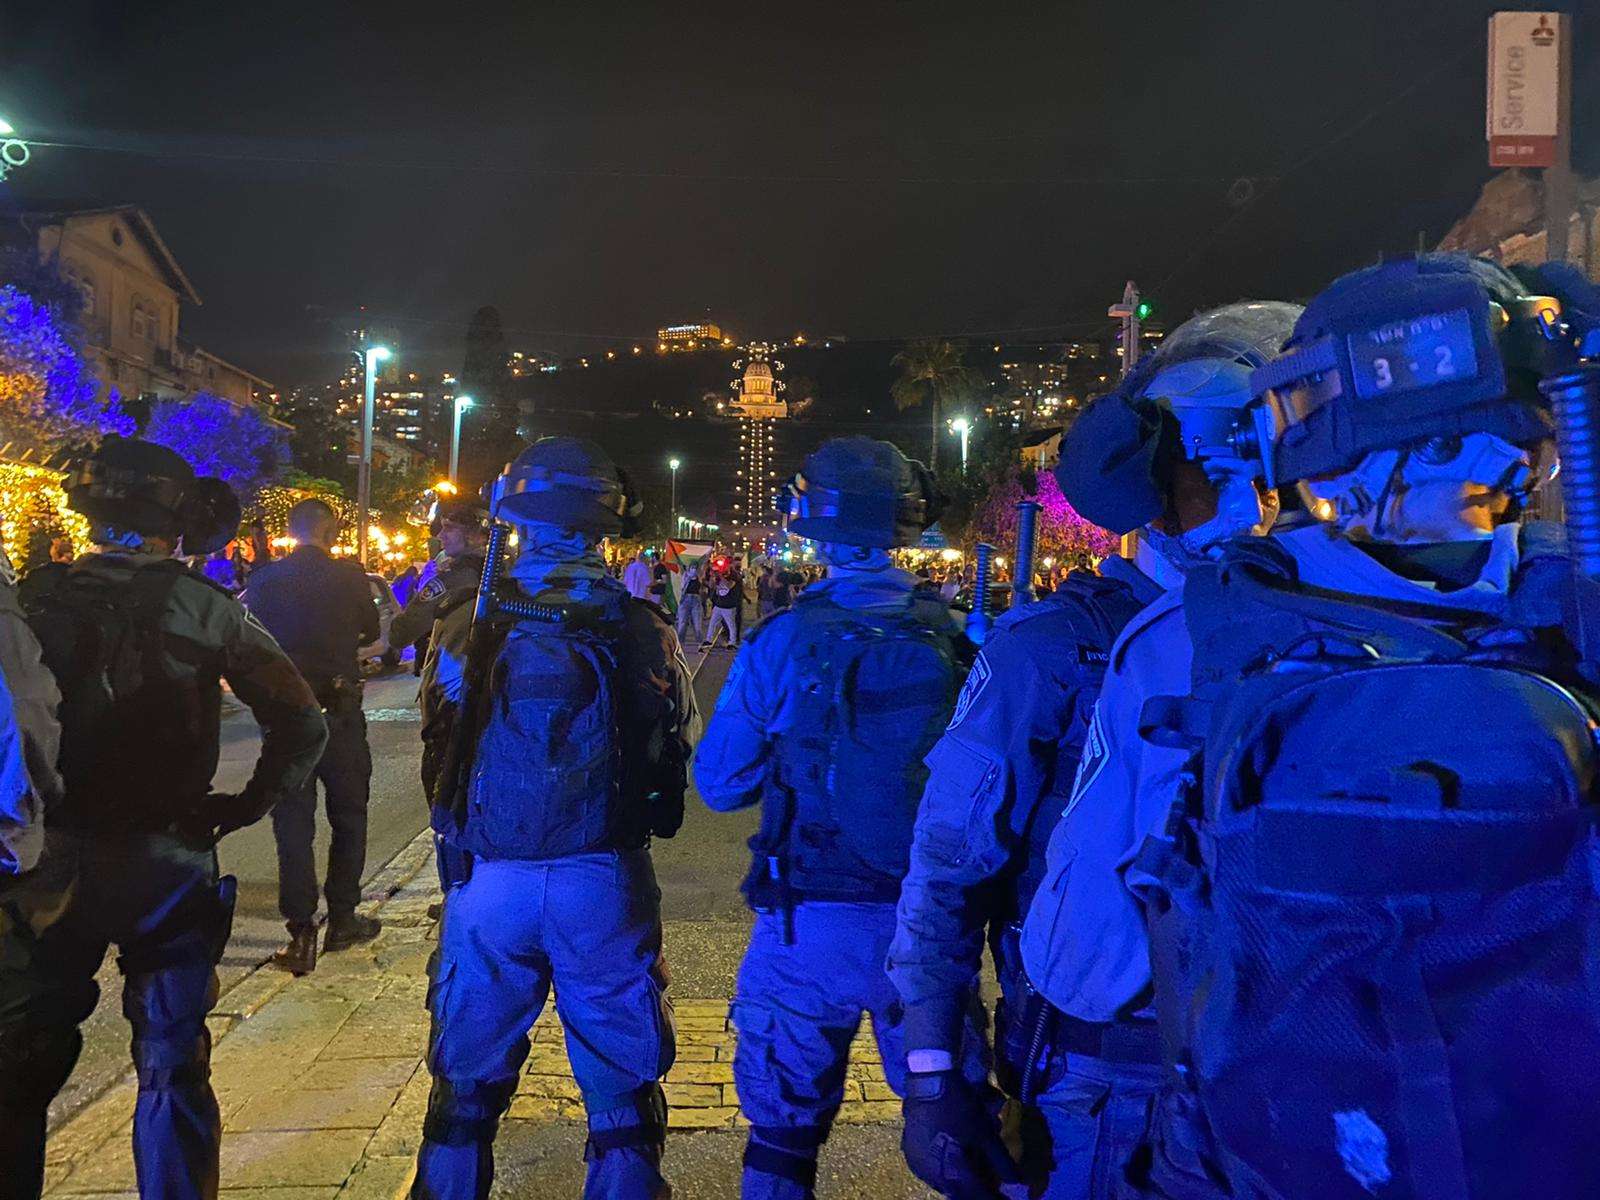 جيش الاحتلال الإسرائيلي يضع خطة لمنع تكرار أحداث الهبة الشعبية في الداخل الفلسطيني المحتل watanserb.com